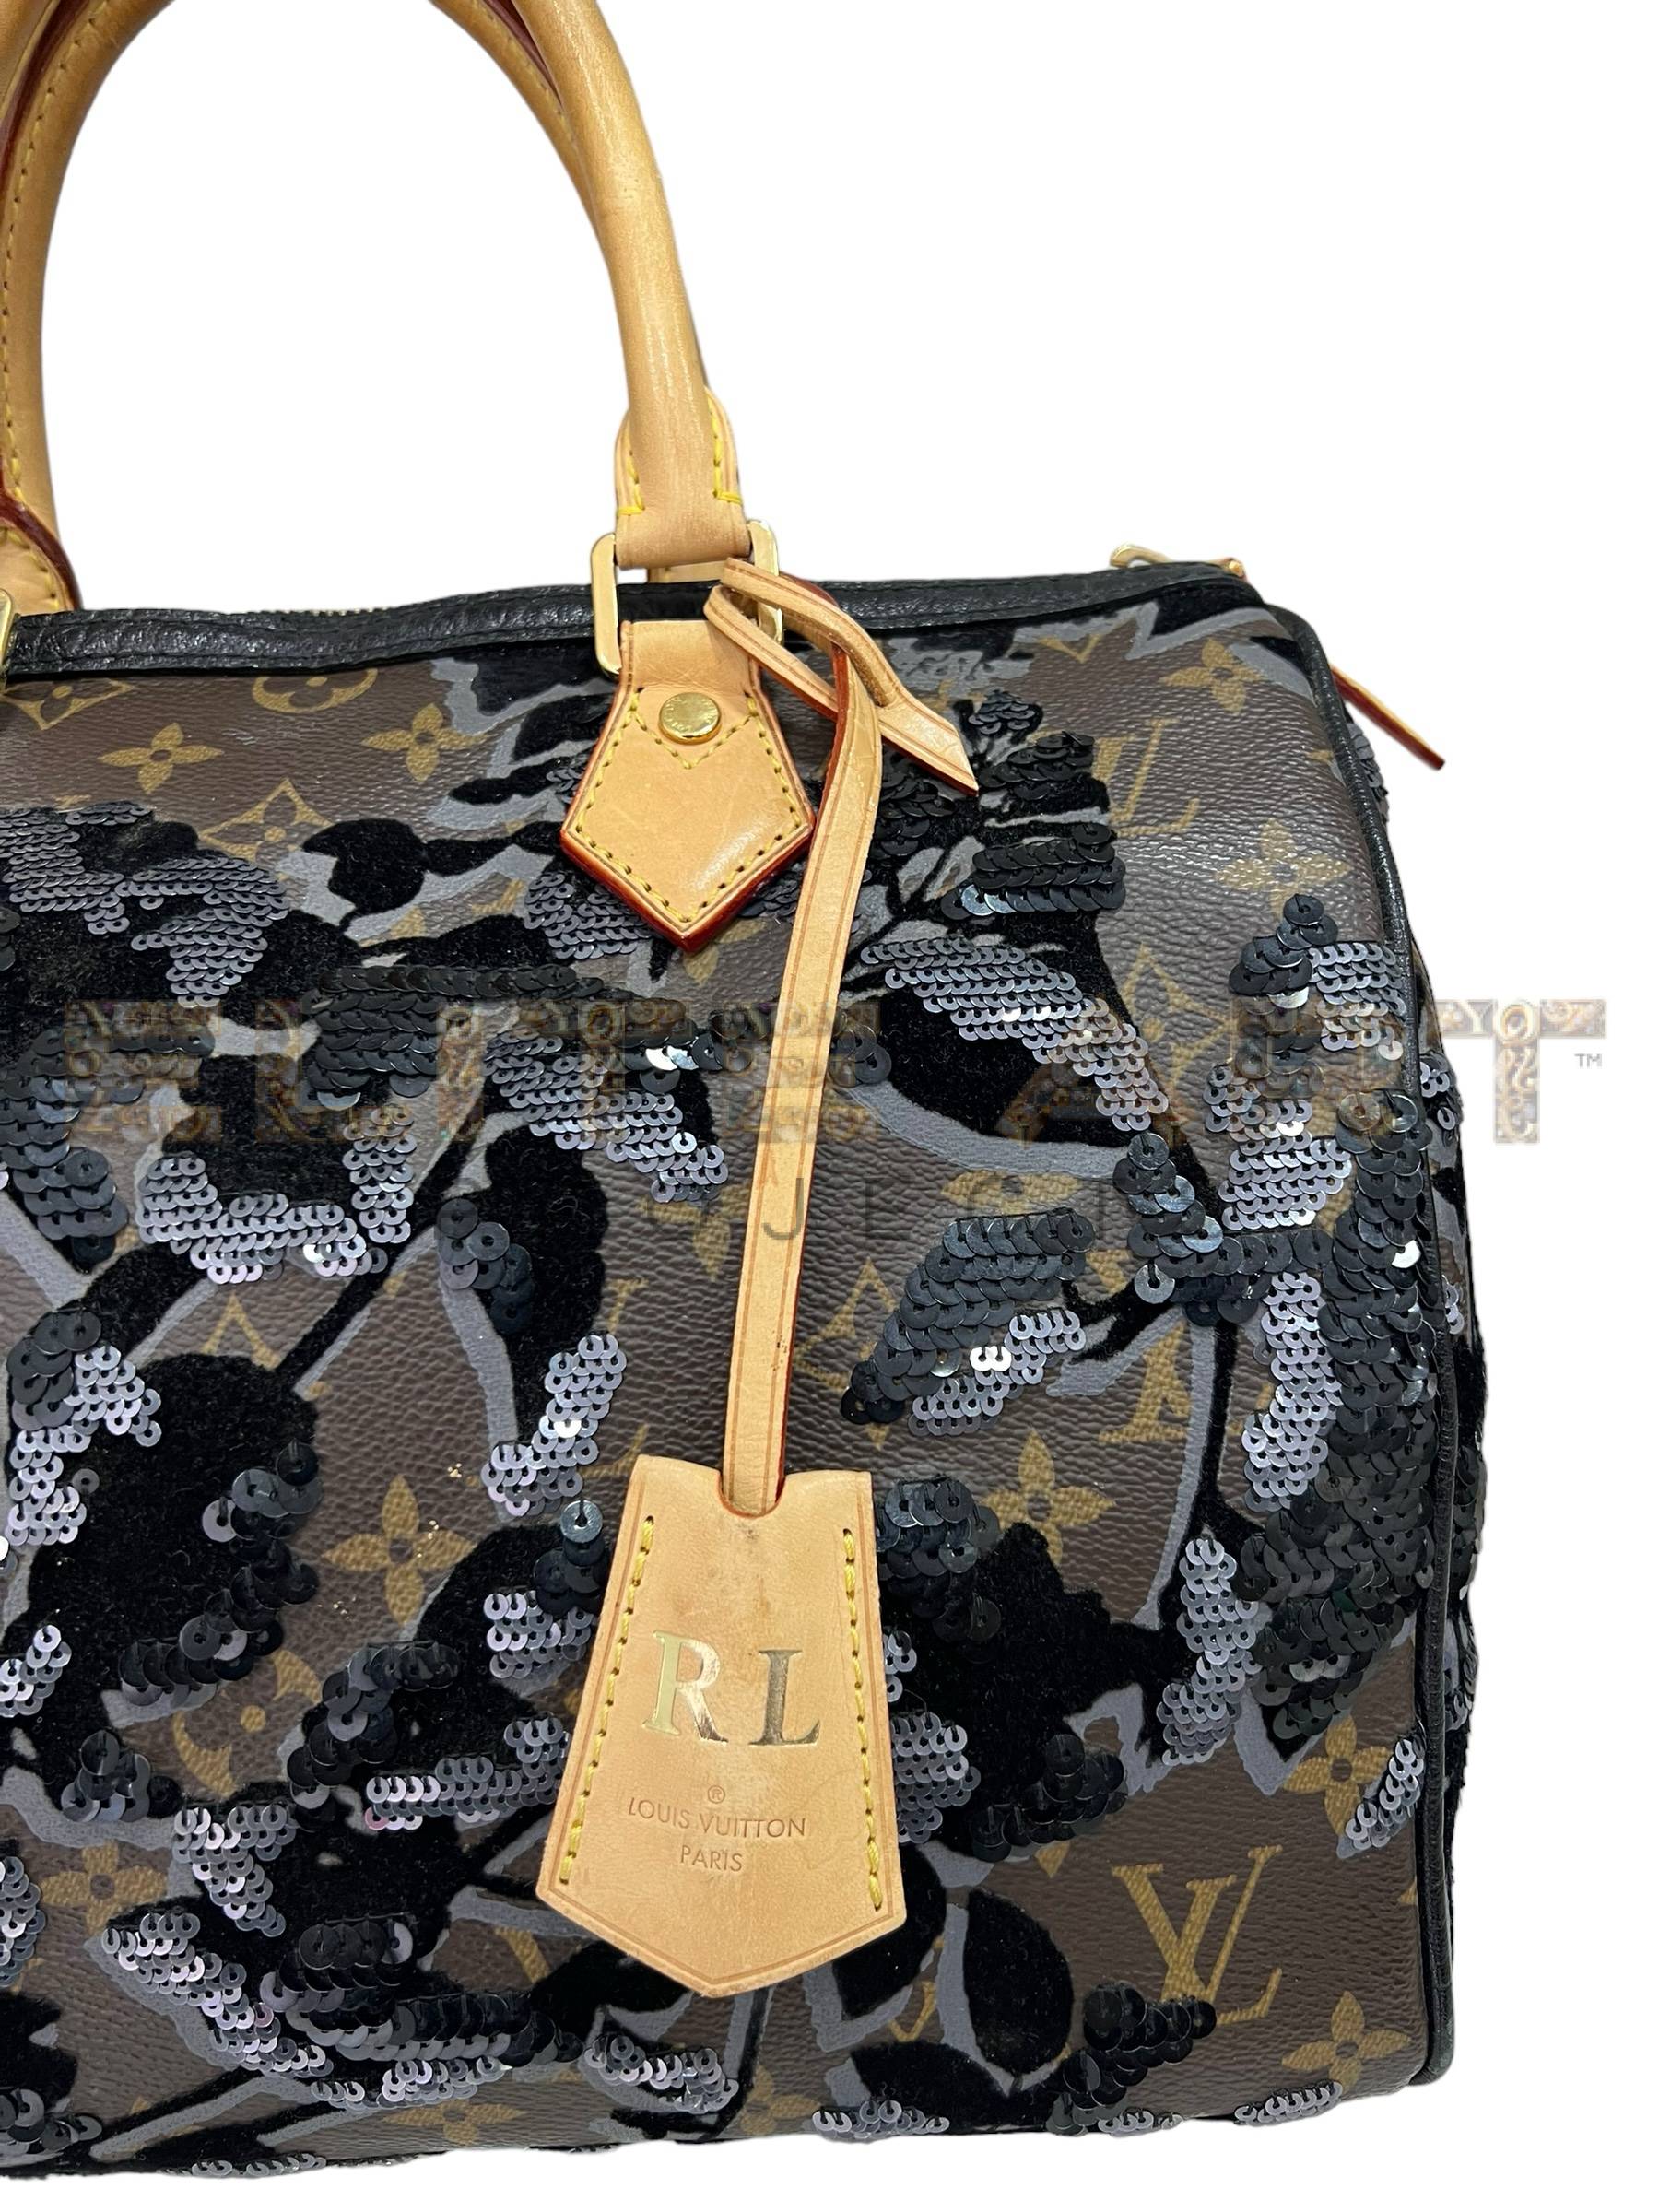 Louis Vuitton bag, Speedy model, size 30, limited edition, Fleur De Jais, monogram canvas, velvet, sequin inserts, patent leather trim, gold hardware, Elite Art Projects, ELS Fashion TV